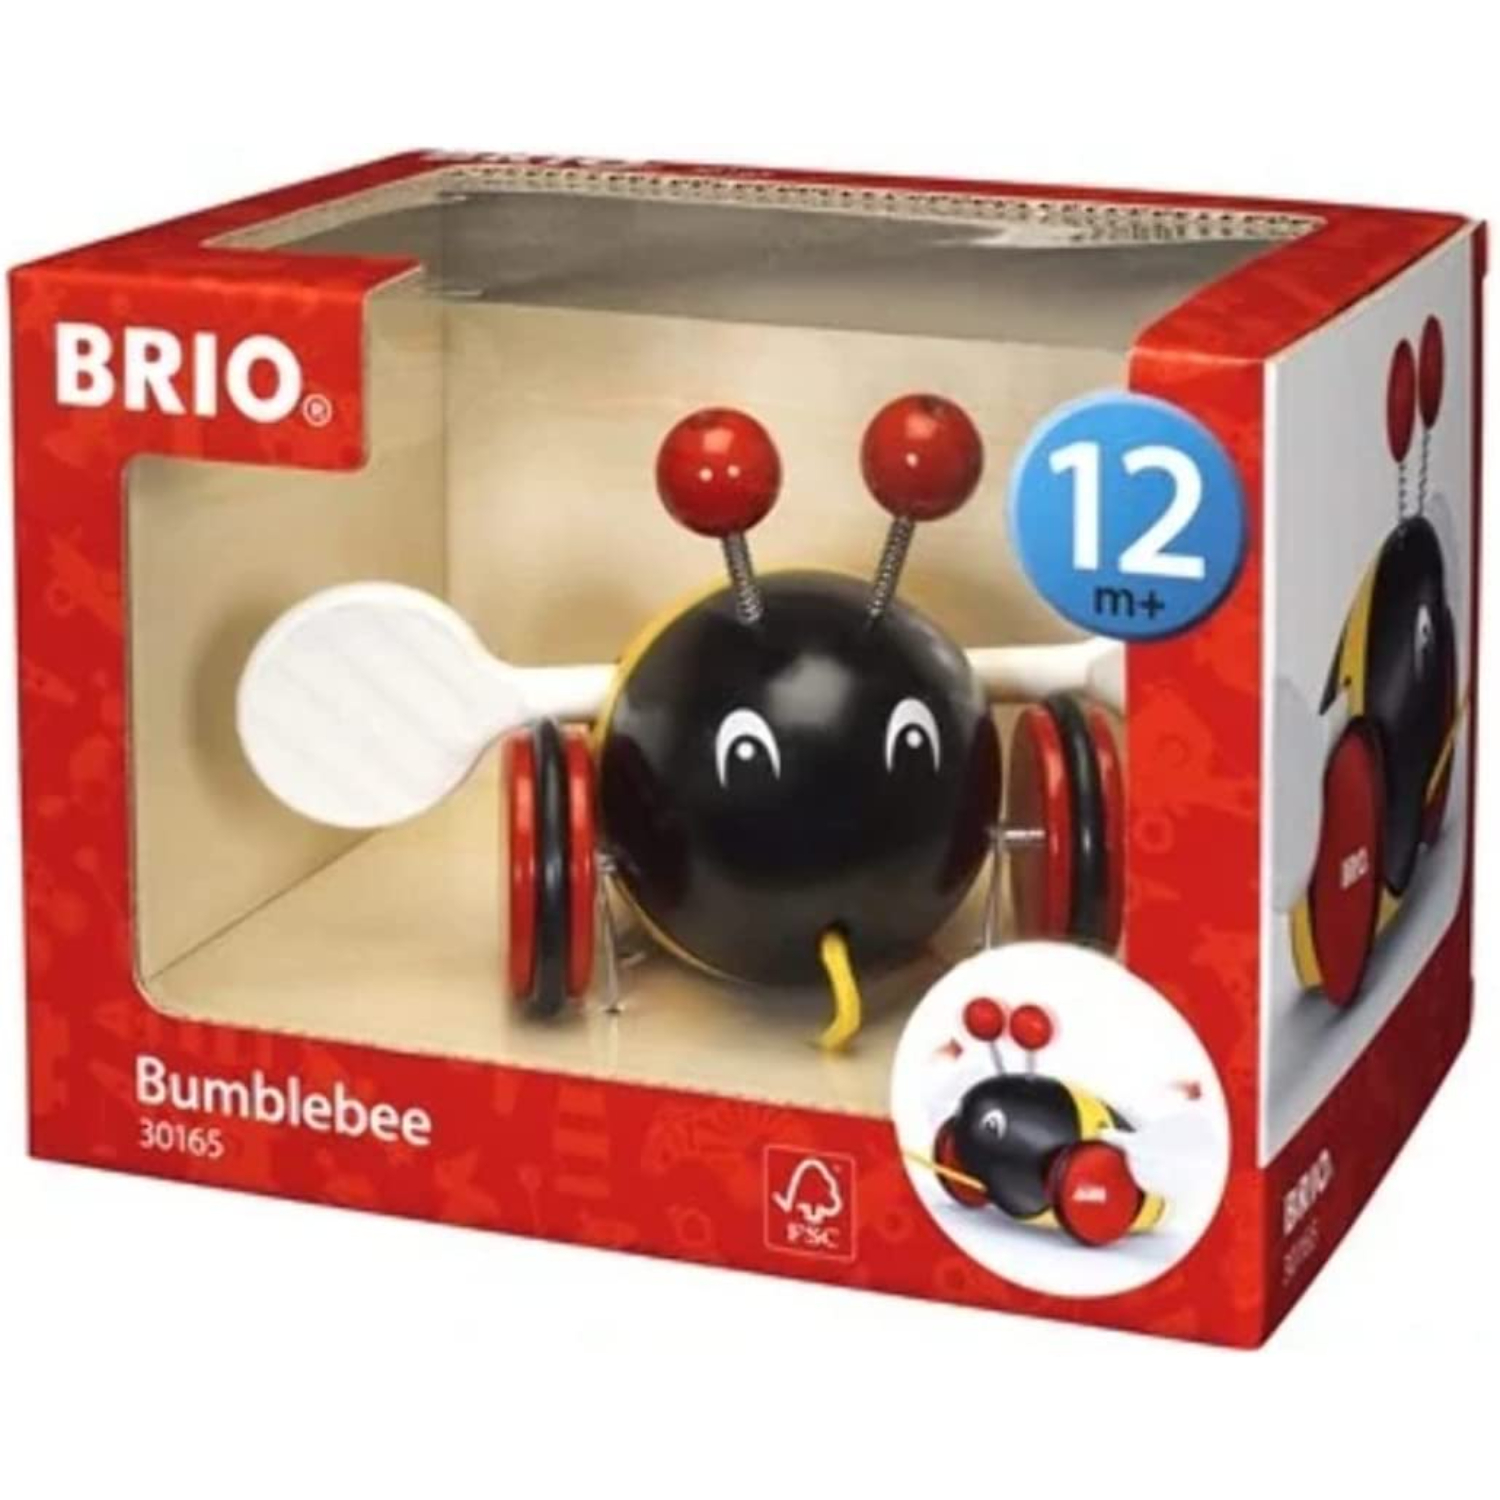 BRIO ブリオ プルトイ バンブルビー 対象年齢 1歳 引き車 引っ張る木製 知育玩具 正規輸入品